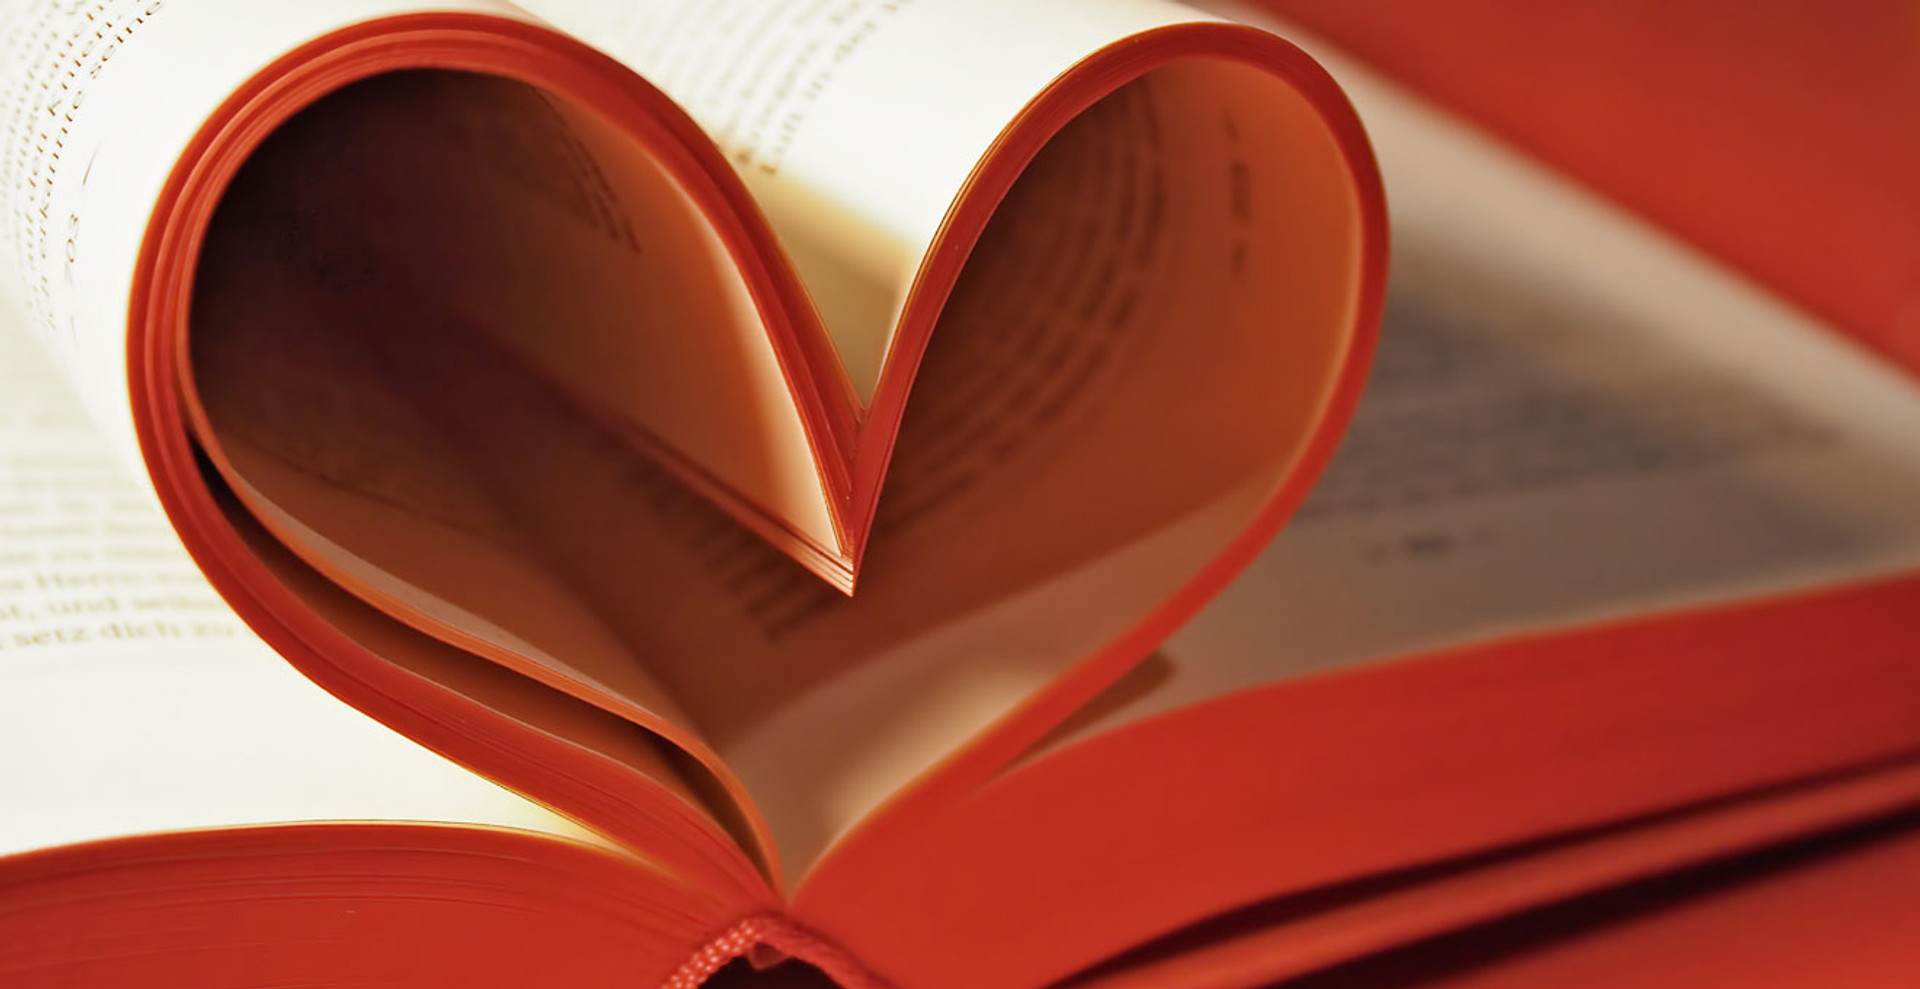 Як ми любимо? 5 мов кохання від доктора філософії